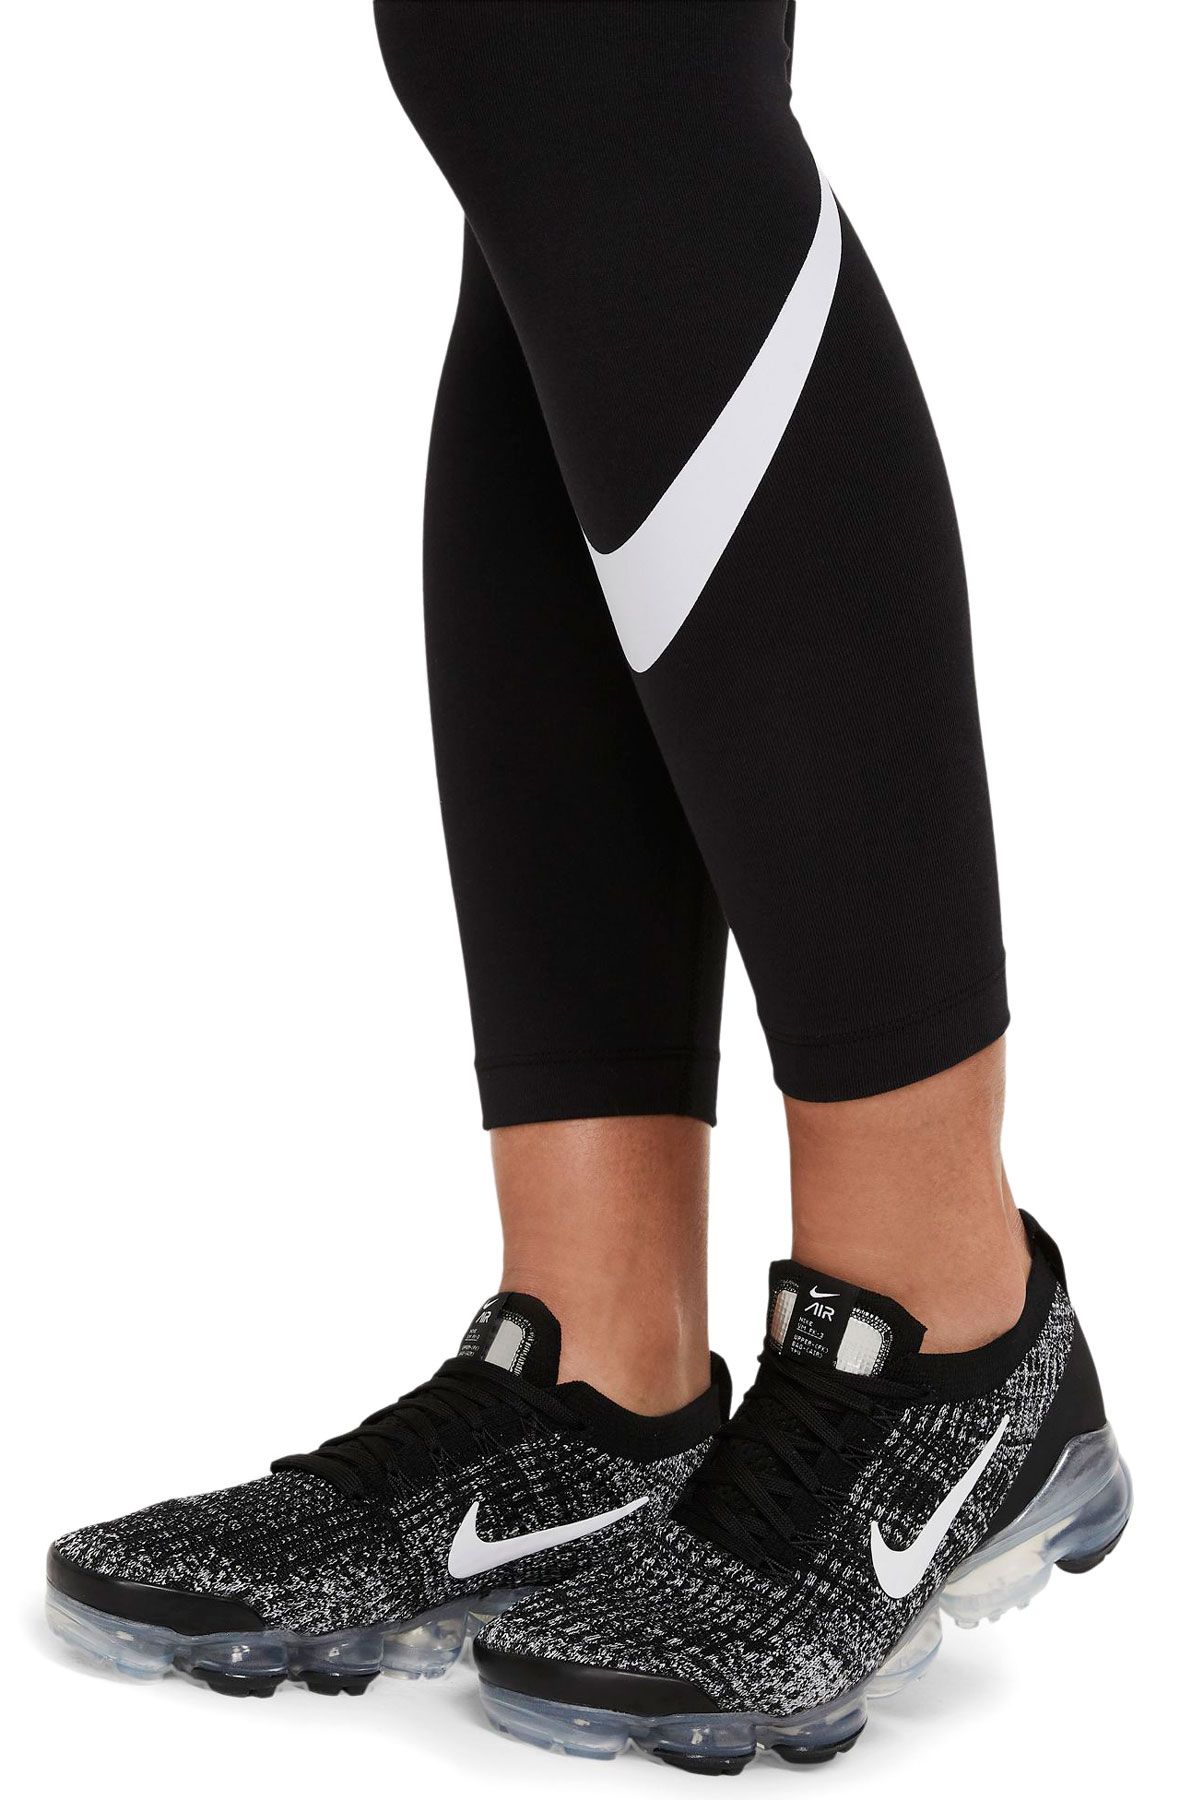 Women's Nike Sportswear Swoosh Life Leggings